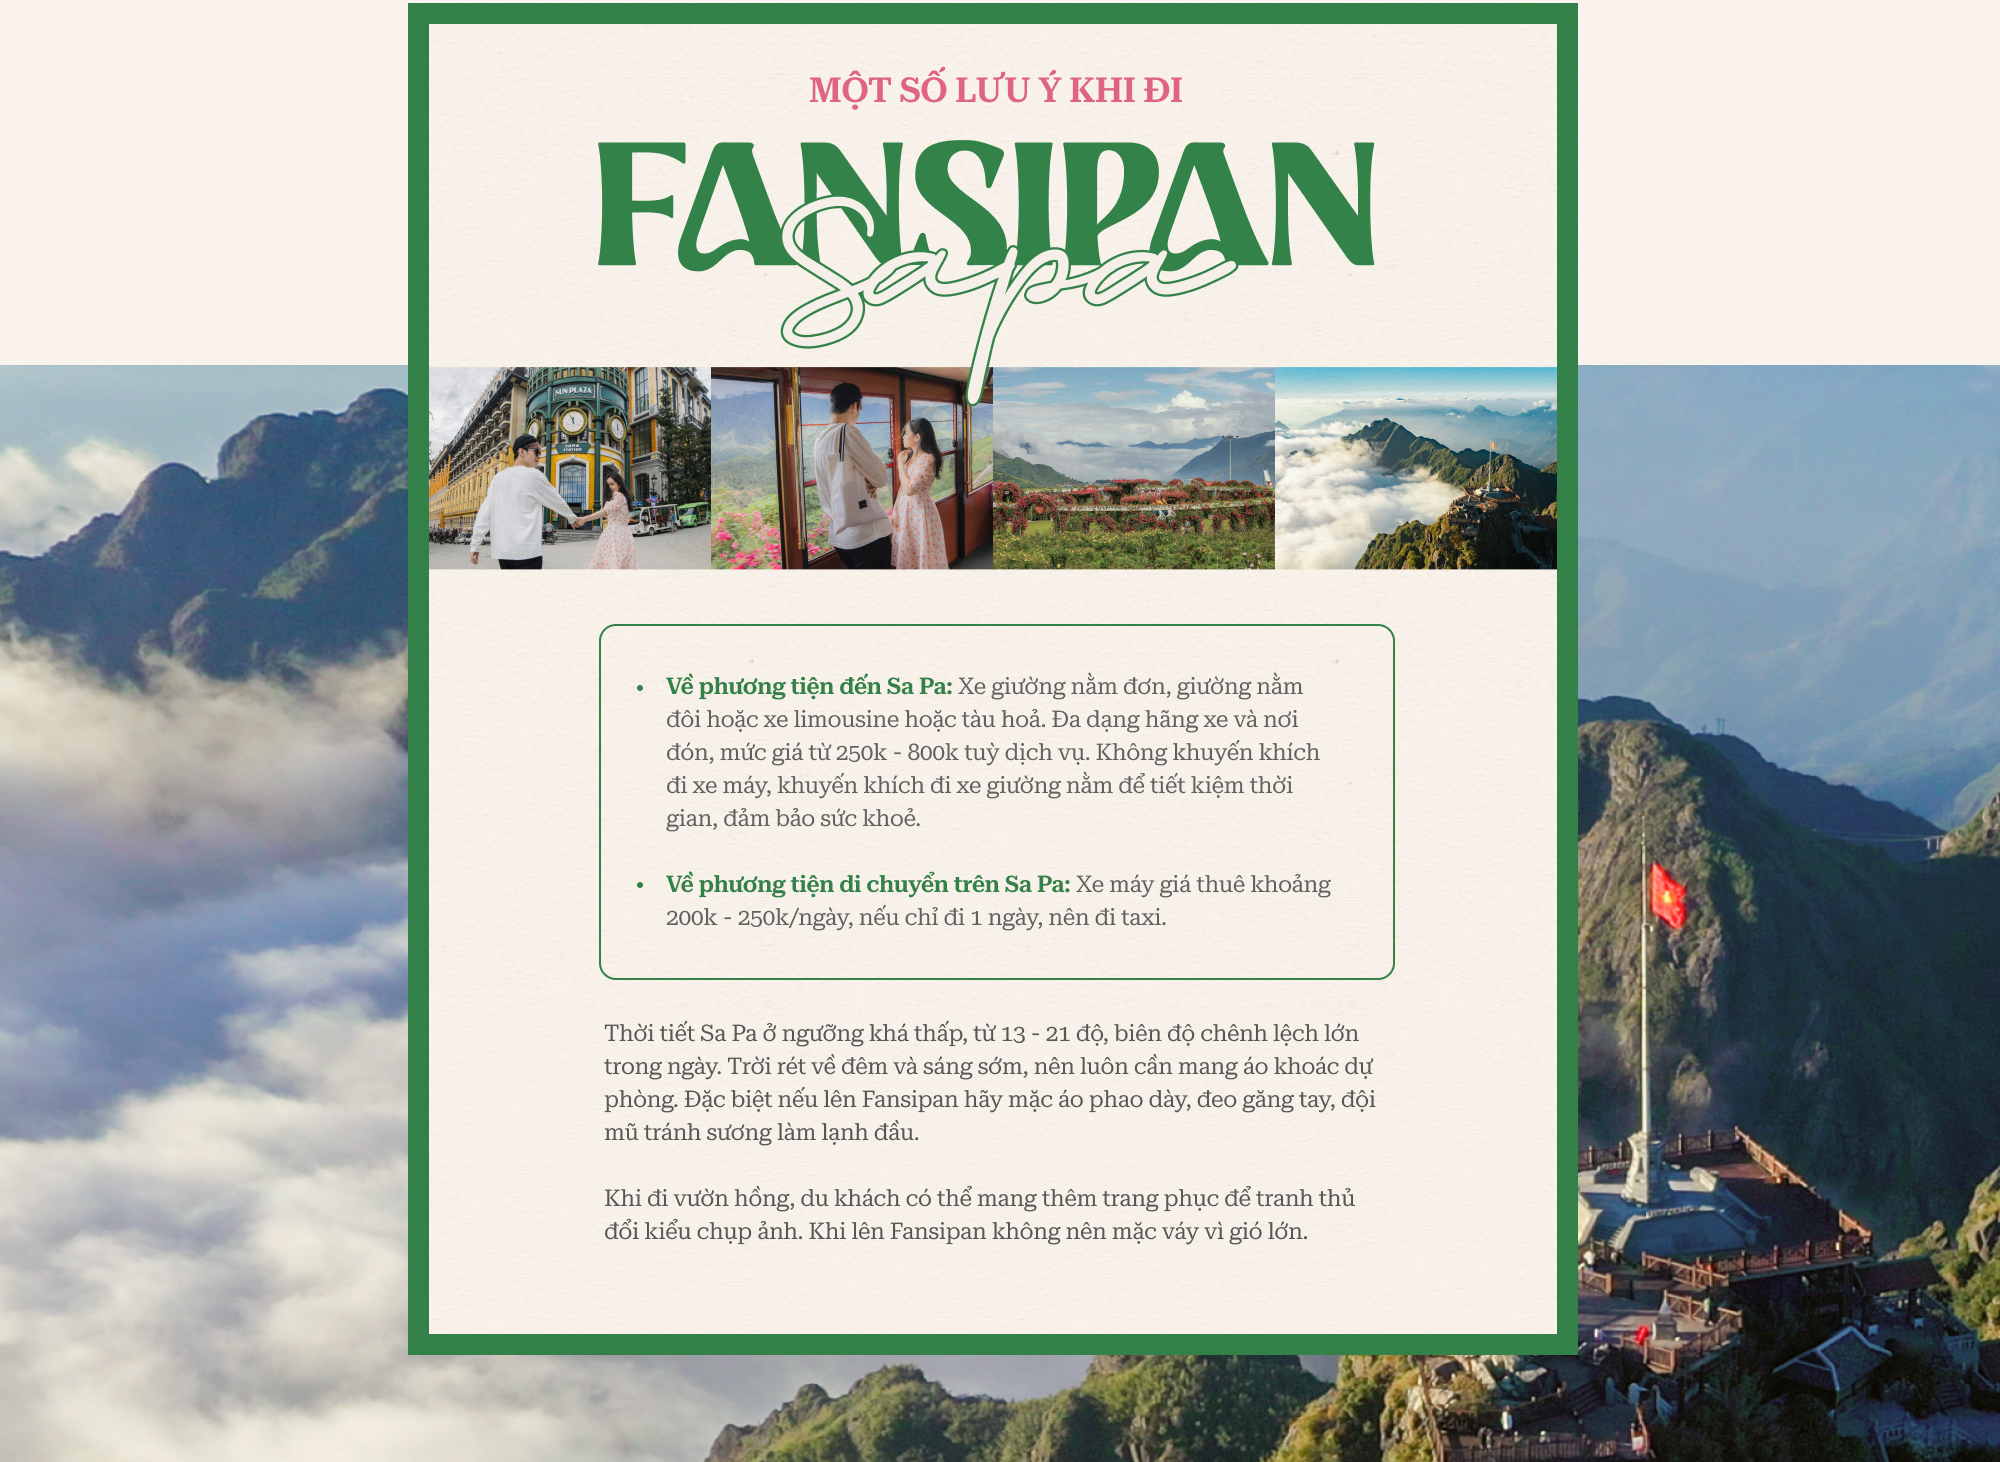 Fansipan không bao giờ cũ: Những góc đẹp đỉnh ở khu du lịch “nóc nhà” Đông Dương, mỗi năm ghé là một lần choáng ngợp - Ảnh 1.